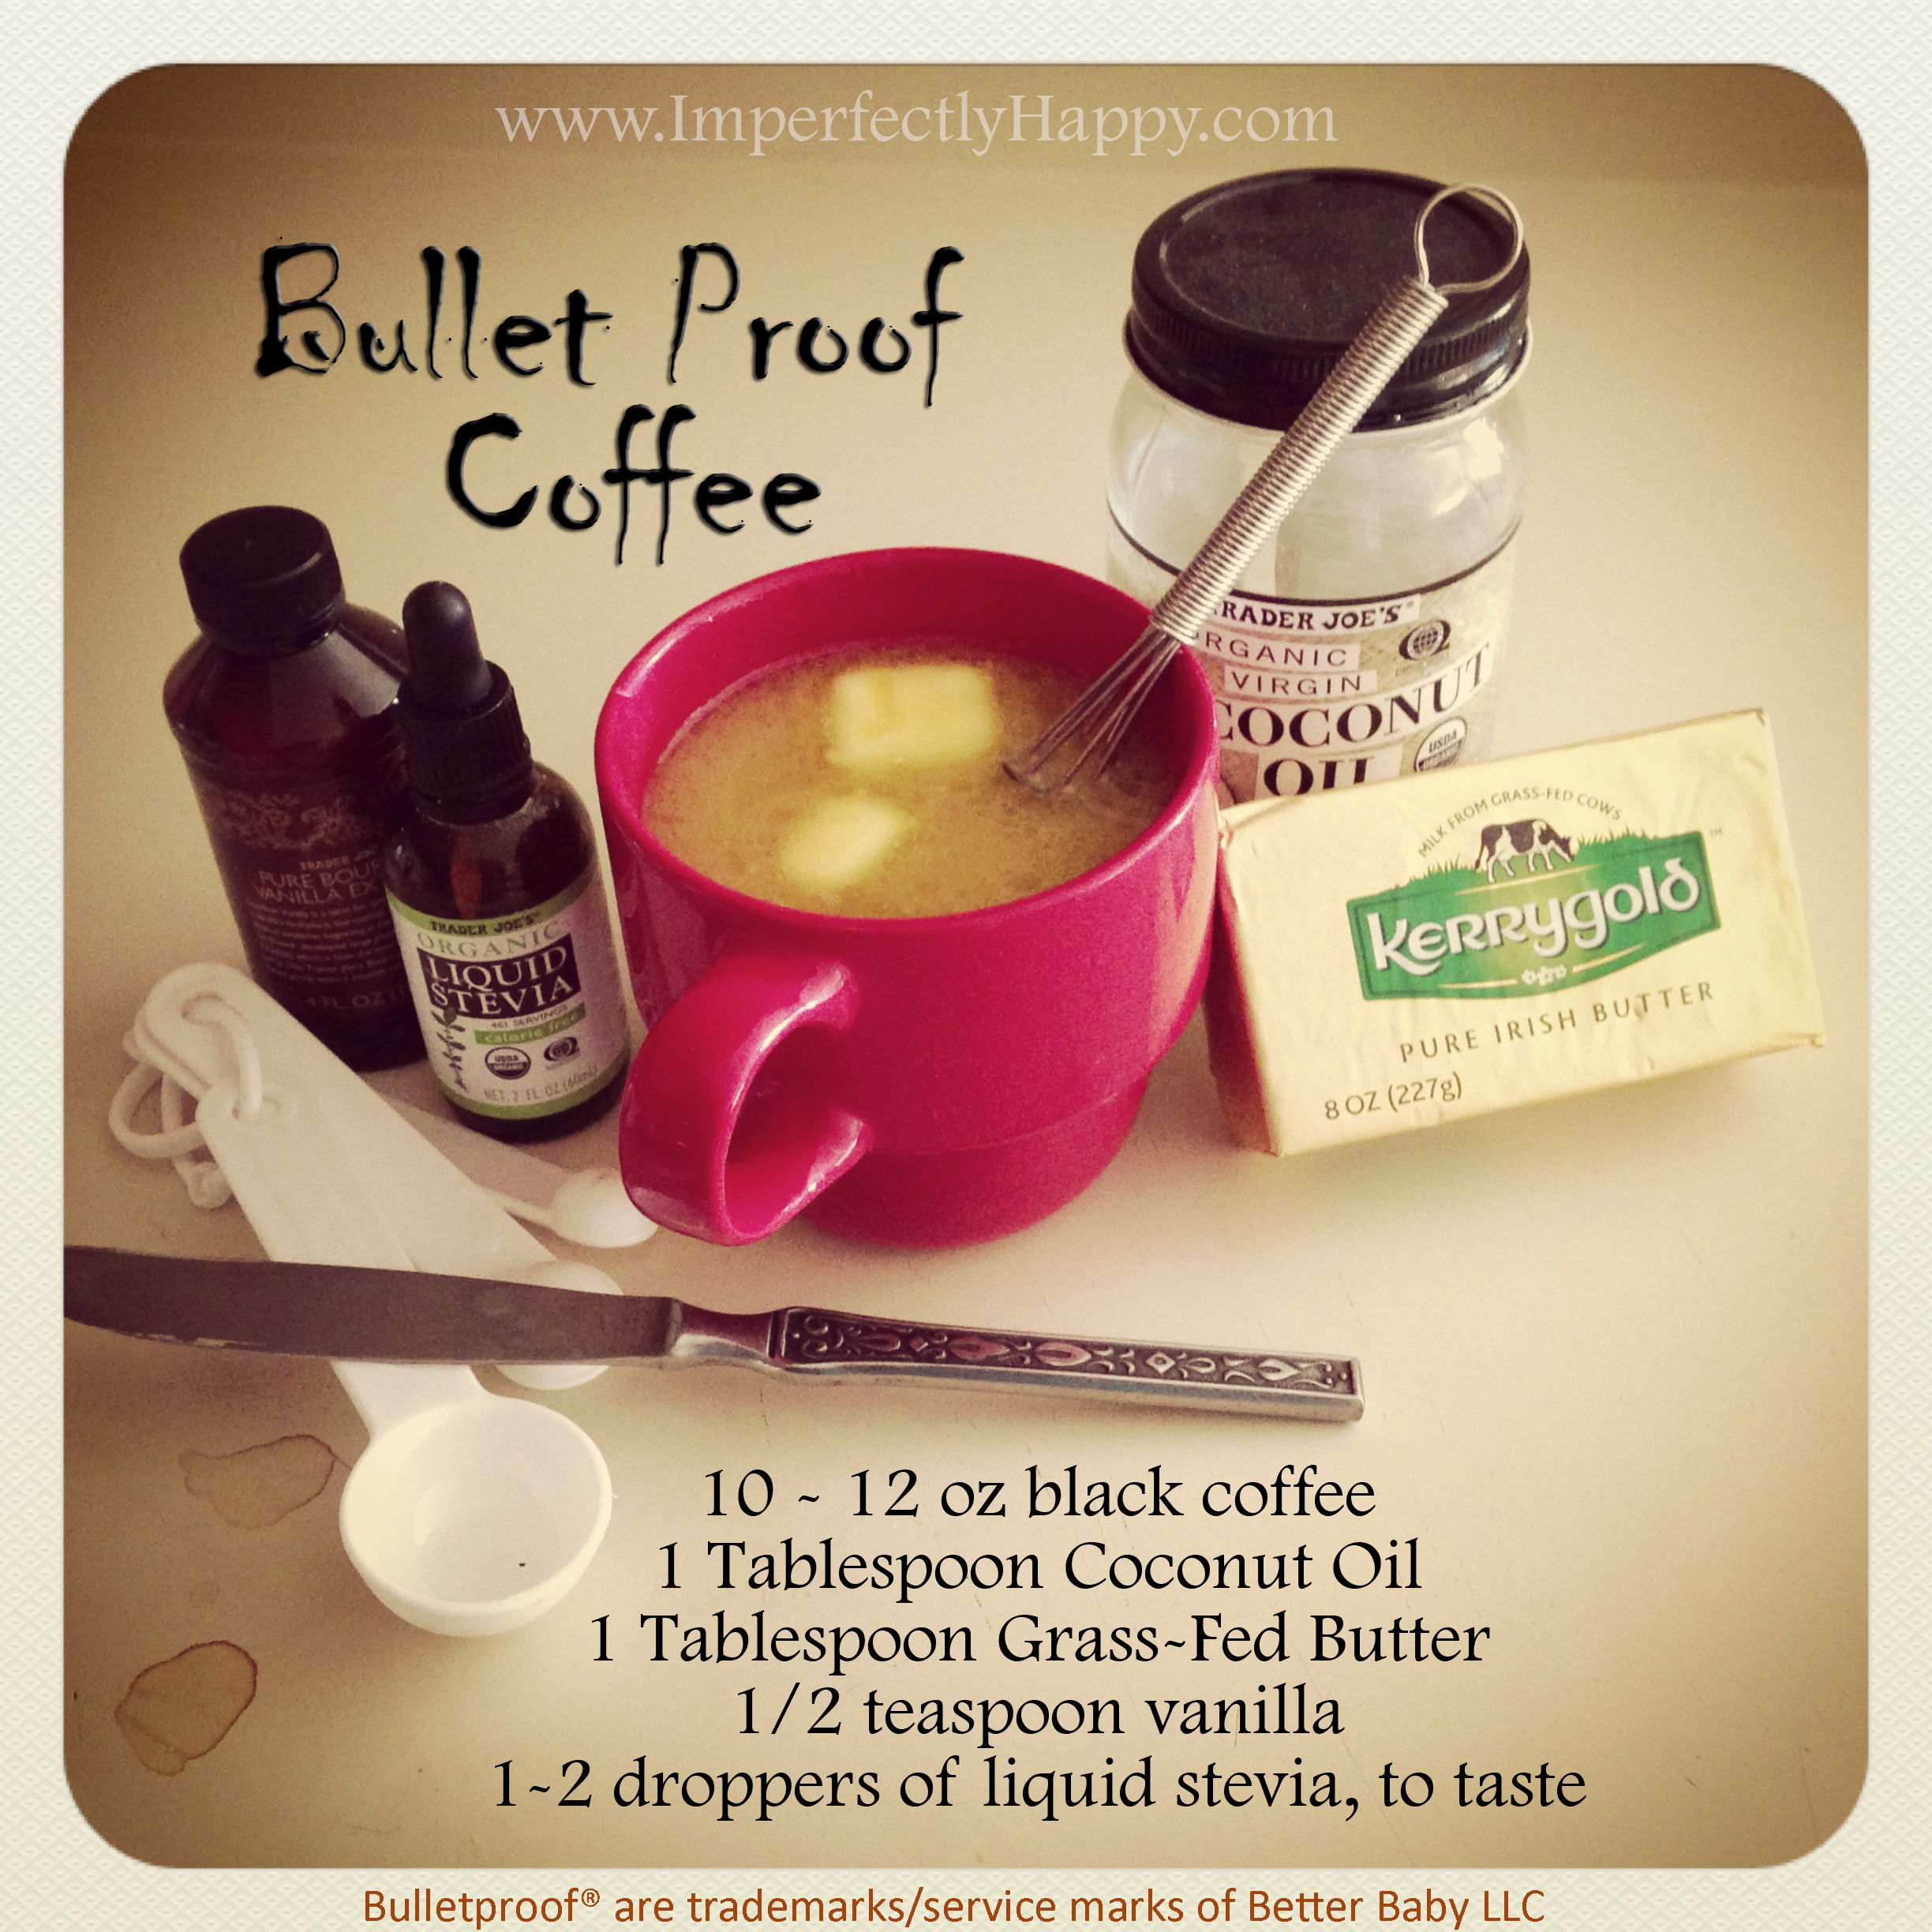 How to Make Bulletproof Coffee! 